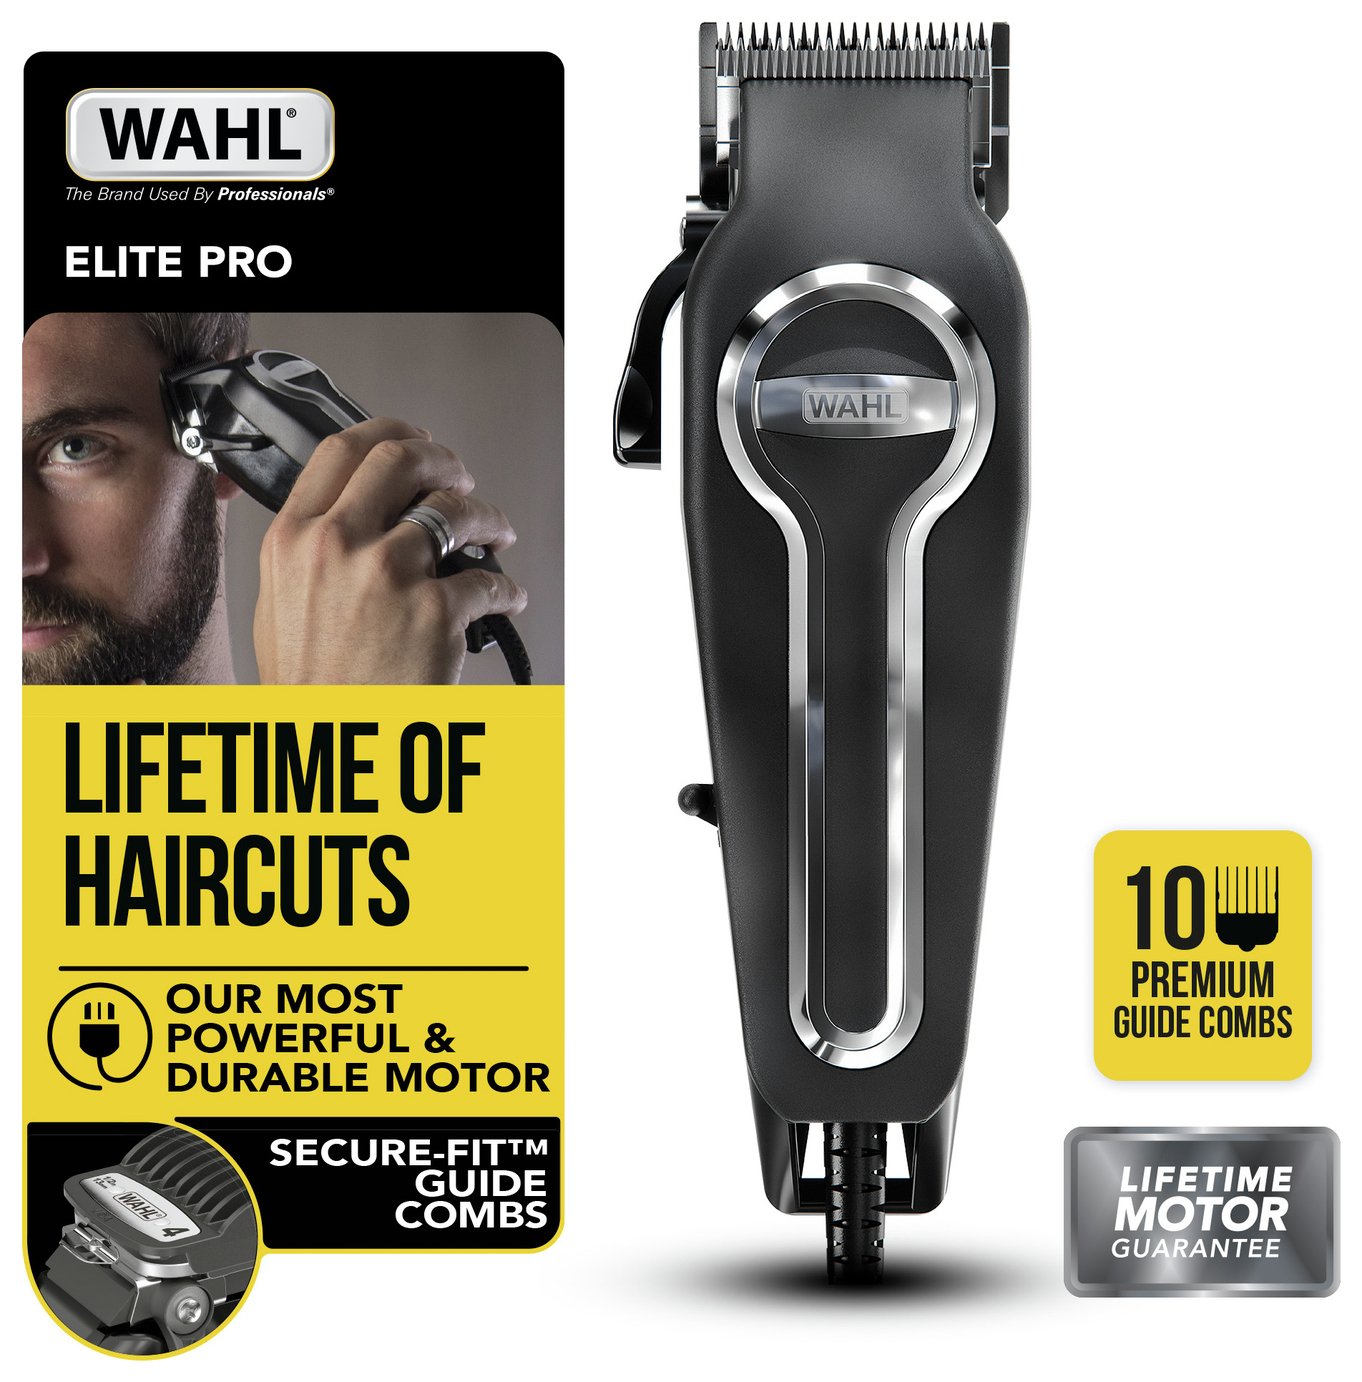 pro hair cutting kit